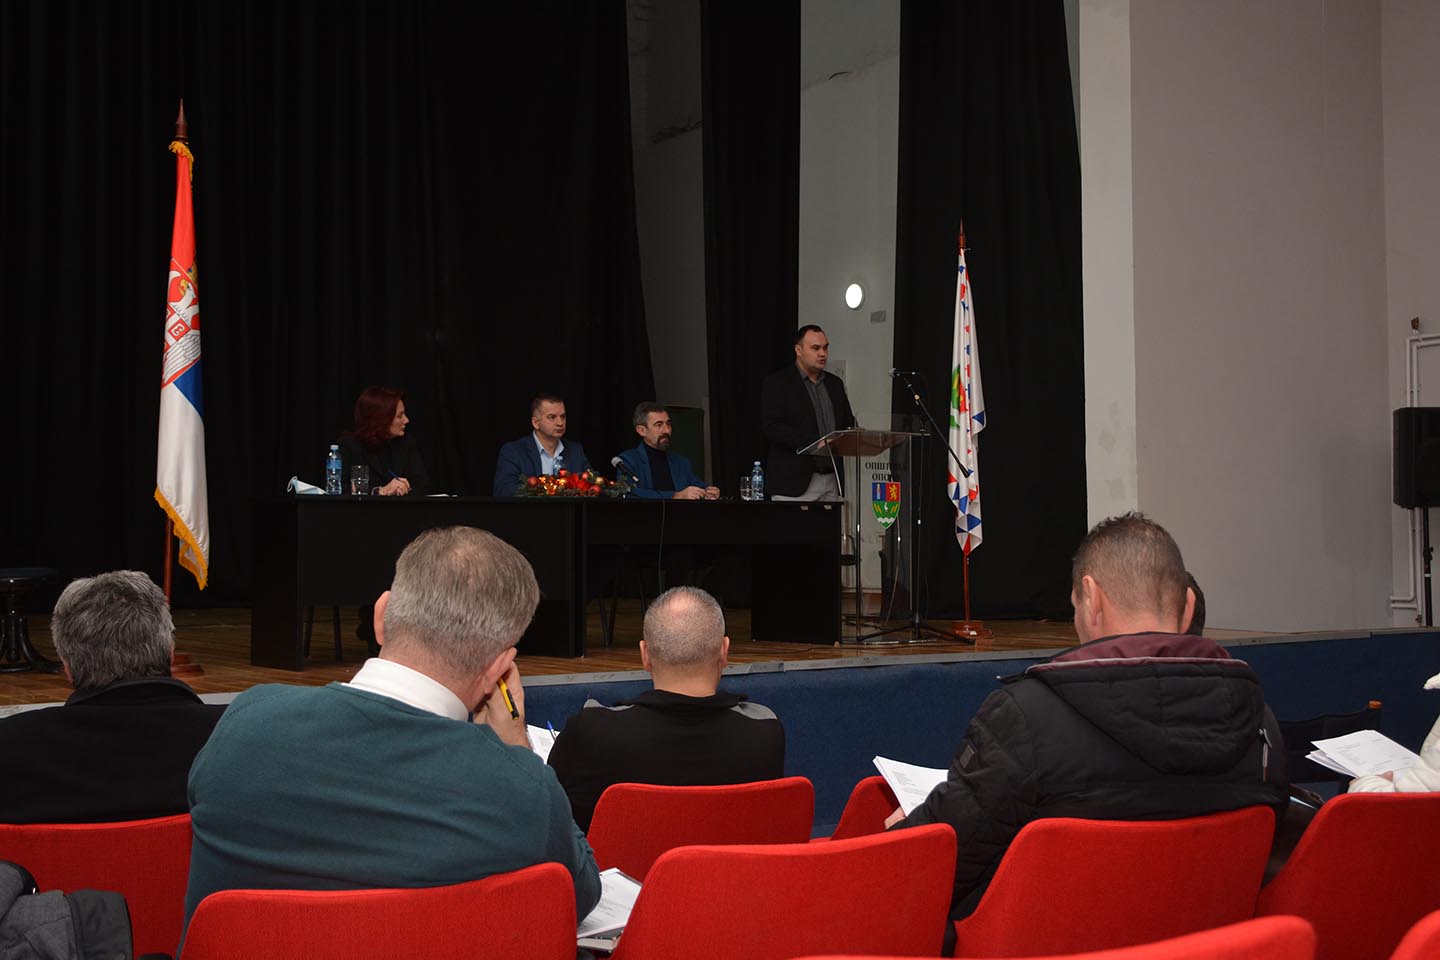 Skupština opštine Opovo 14. sednica: Usvojen opštinski budžet za 2022. godinu